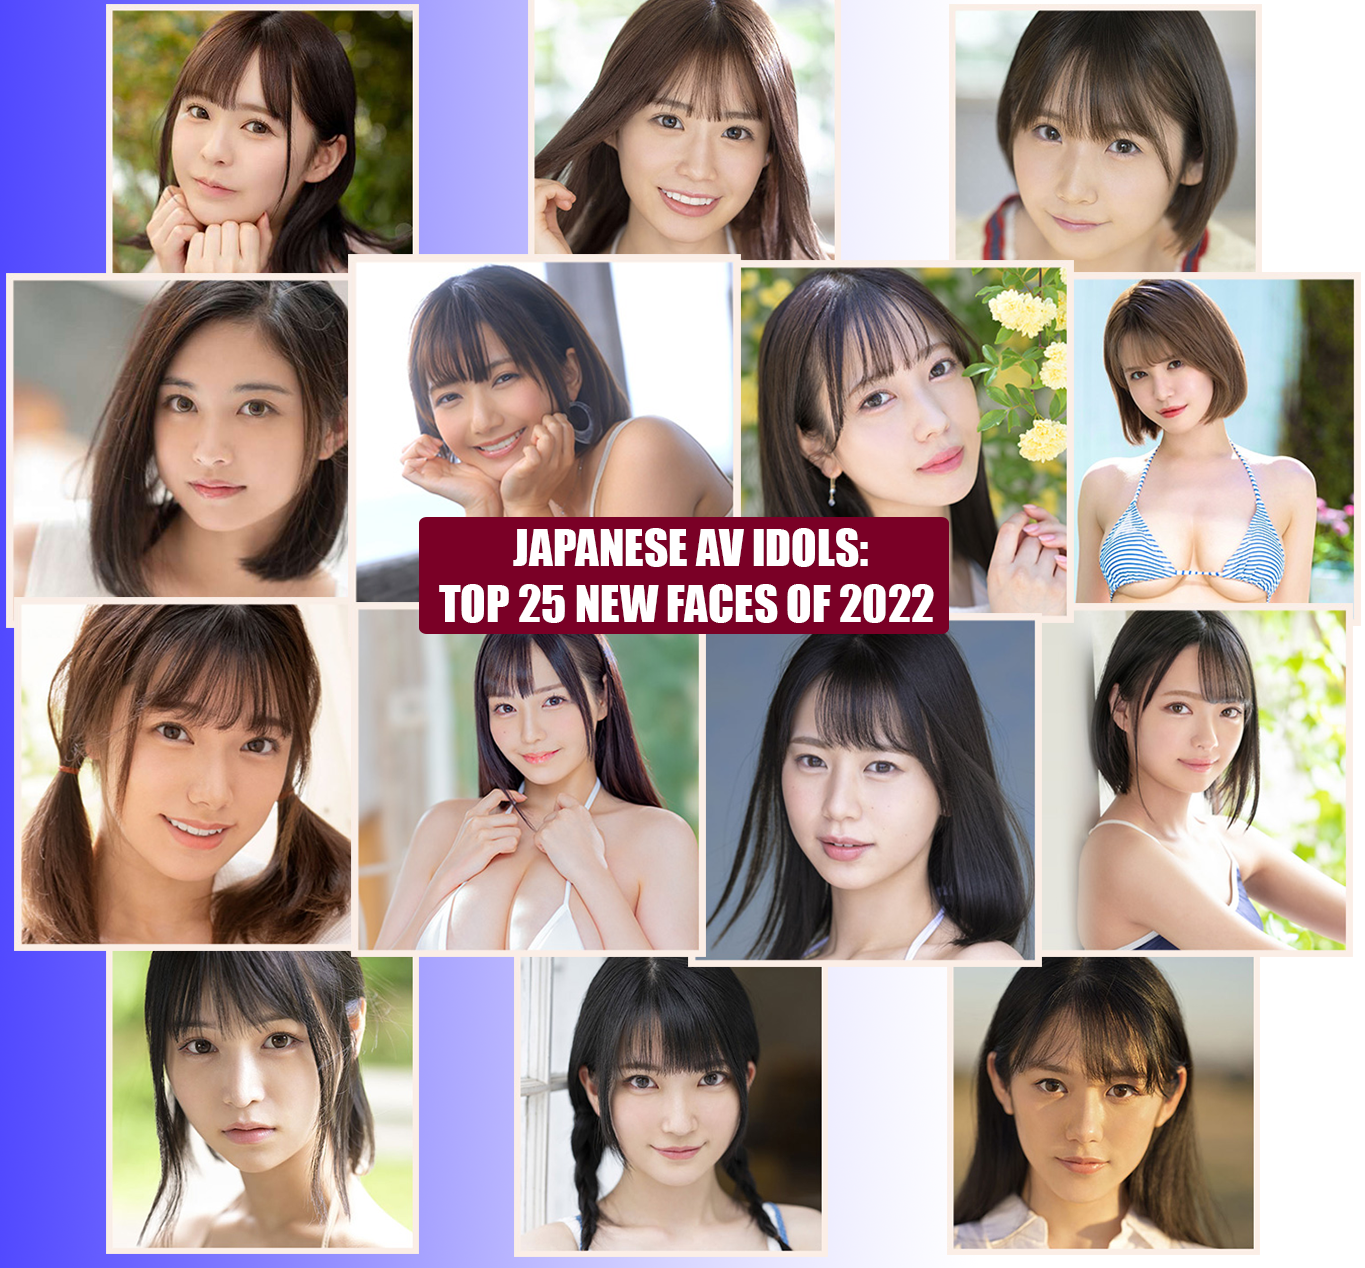 Top New Faces of 2022 Japanese AV Idols